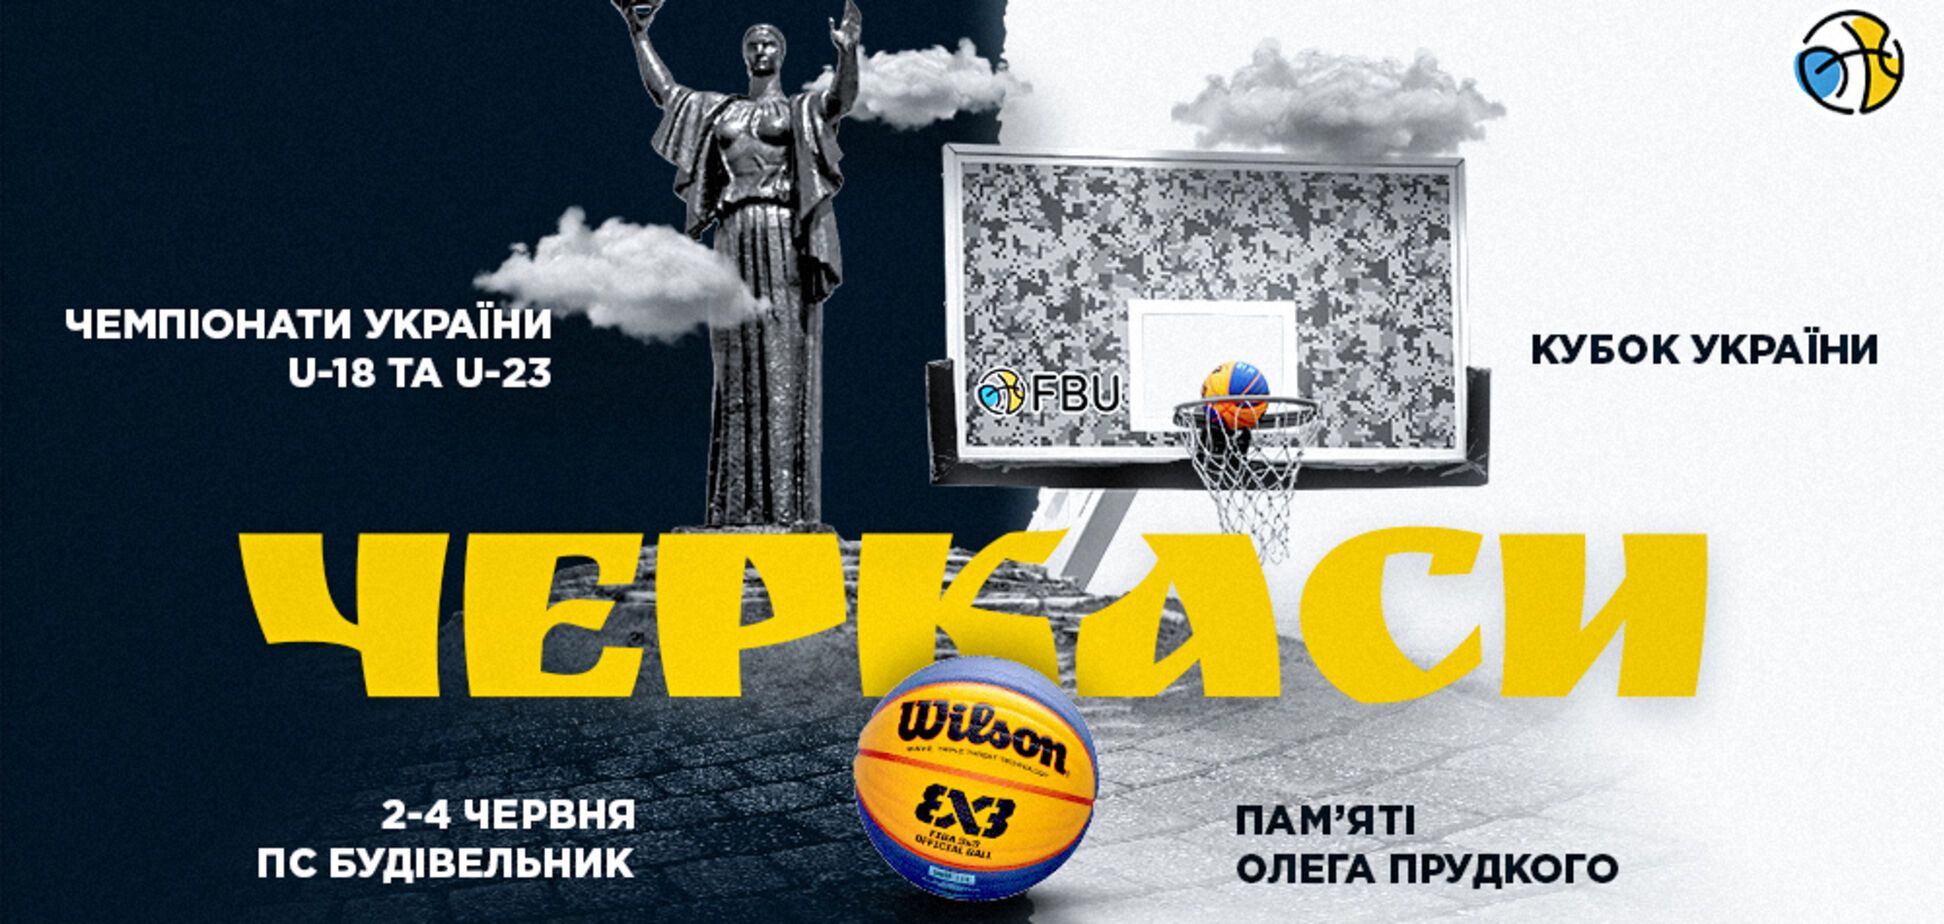 В Черкасах пройде п'ятий тур Кубку України та етапи чемпіонатів України U-18 та U-23 з баскетболу 3х3